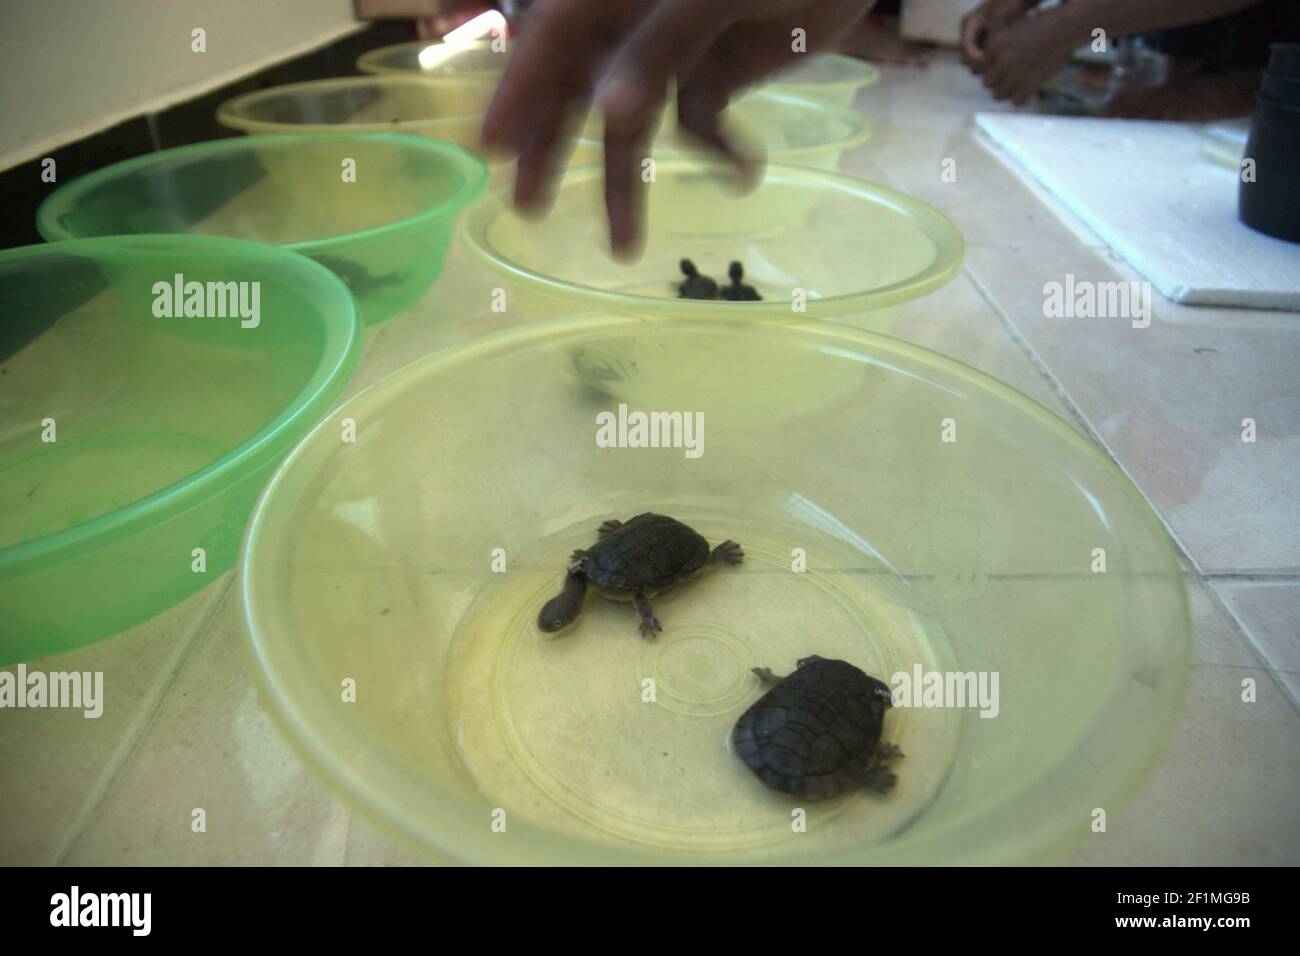 Rote Insel, Indonesien. Juli 15, 2009. Arbeiter einer Firma, die ein offizieller Züchter der Rote Island Schlangenhalsschildkröten (Chelodina mccordi) ist, die die endemischen Schildkröten in Plastikschalen zur Konditionierungsphase platziert. In Gefangenschaft gezüchtet, werden die Schildkröten auf einer feierlichen Veranstaltung, an der indonesische Beamte am 16. Juli 2009 teilnehmen, in die Wildnis entlassen, in einen der geeigneten Lebensräume, den Peto-See im Dorf Maubesi. Indonesische Beamte, offizielle Züchter und NGOs führen das Freigabeprogramm als eine der Schutzbemühungen zur Rettung der vom Aussterben bedrohten Arten durch. Stockfoto